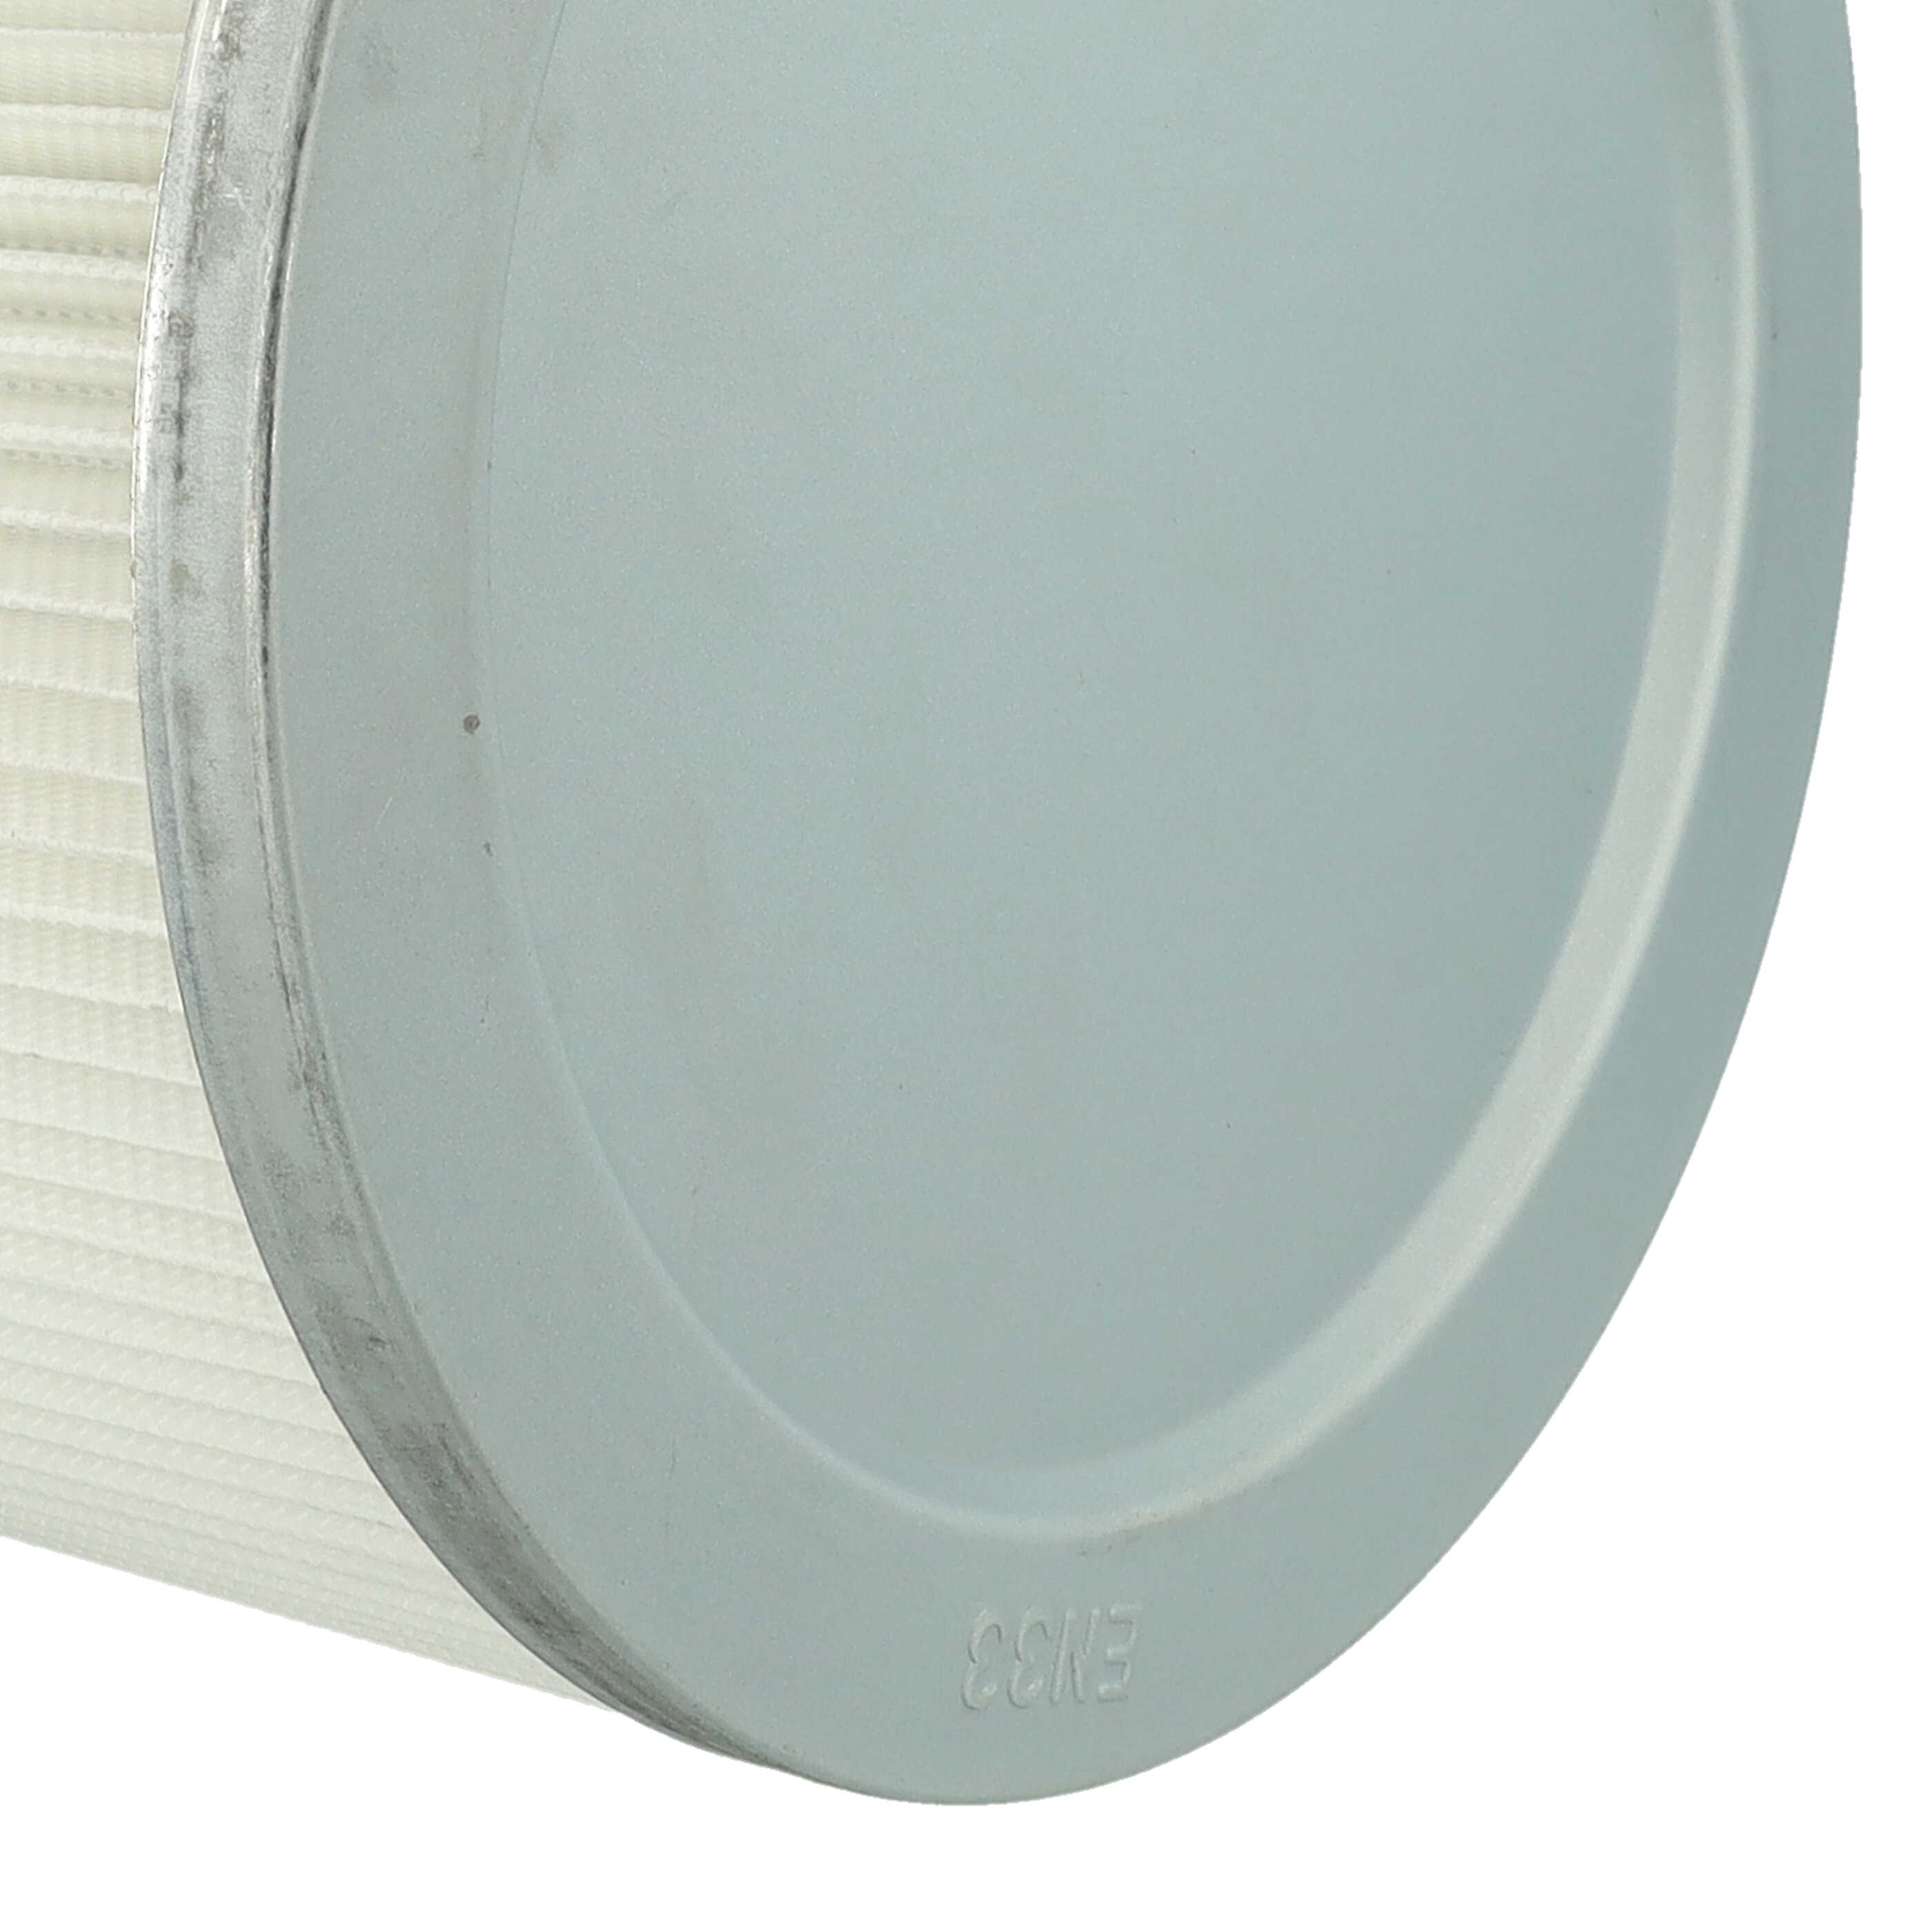 Filtr do odkurzacza Bosch zamiennik Bosch 2607432008 - wkład filtracyjny, biały / srebrny / niebieski